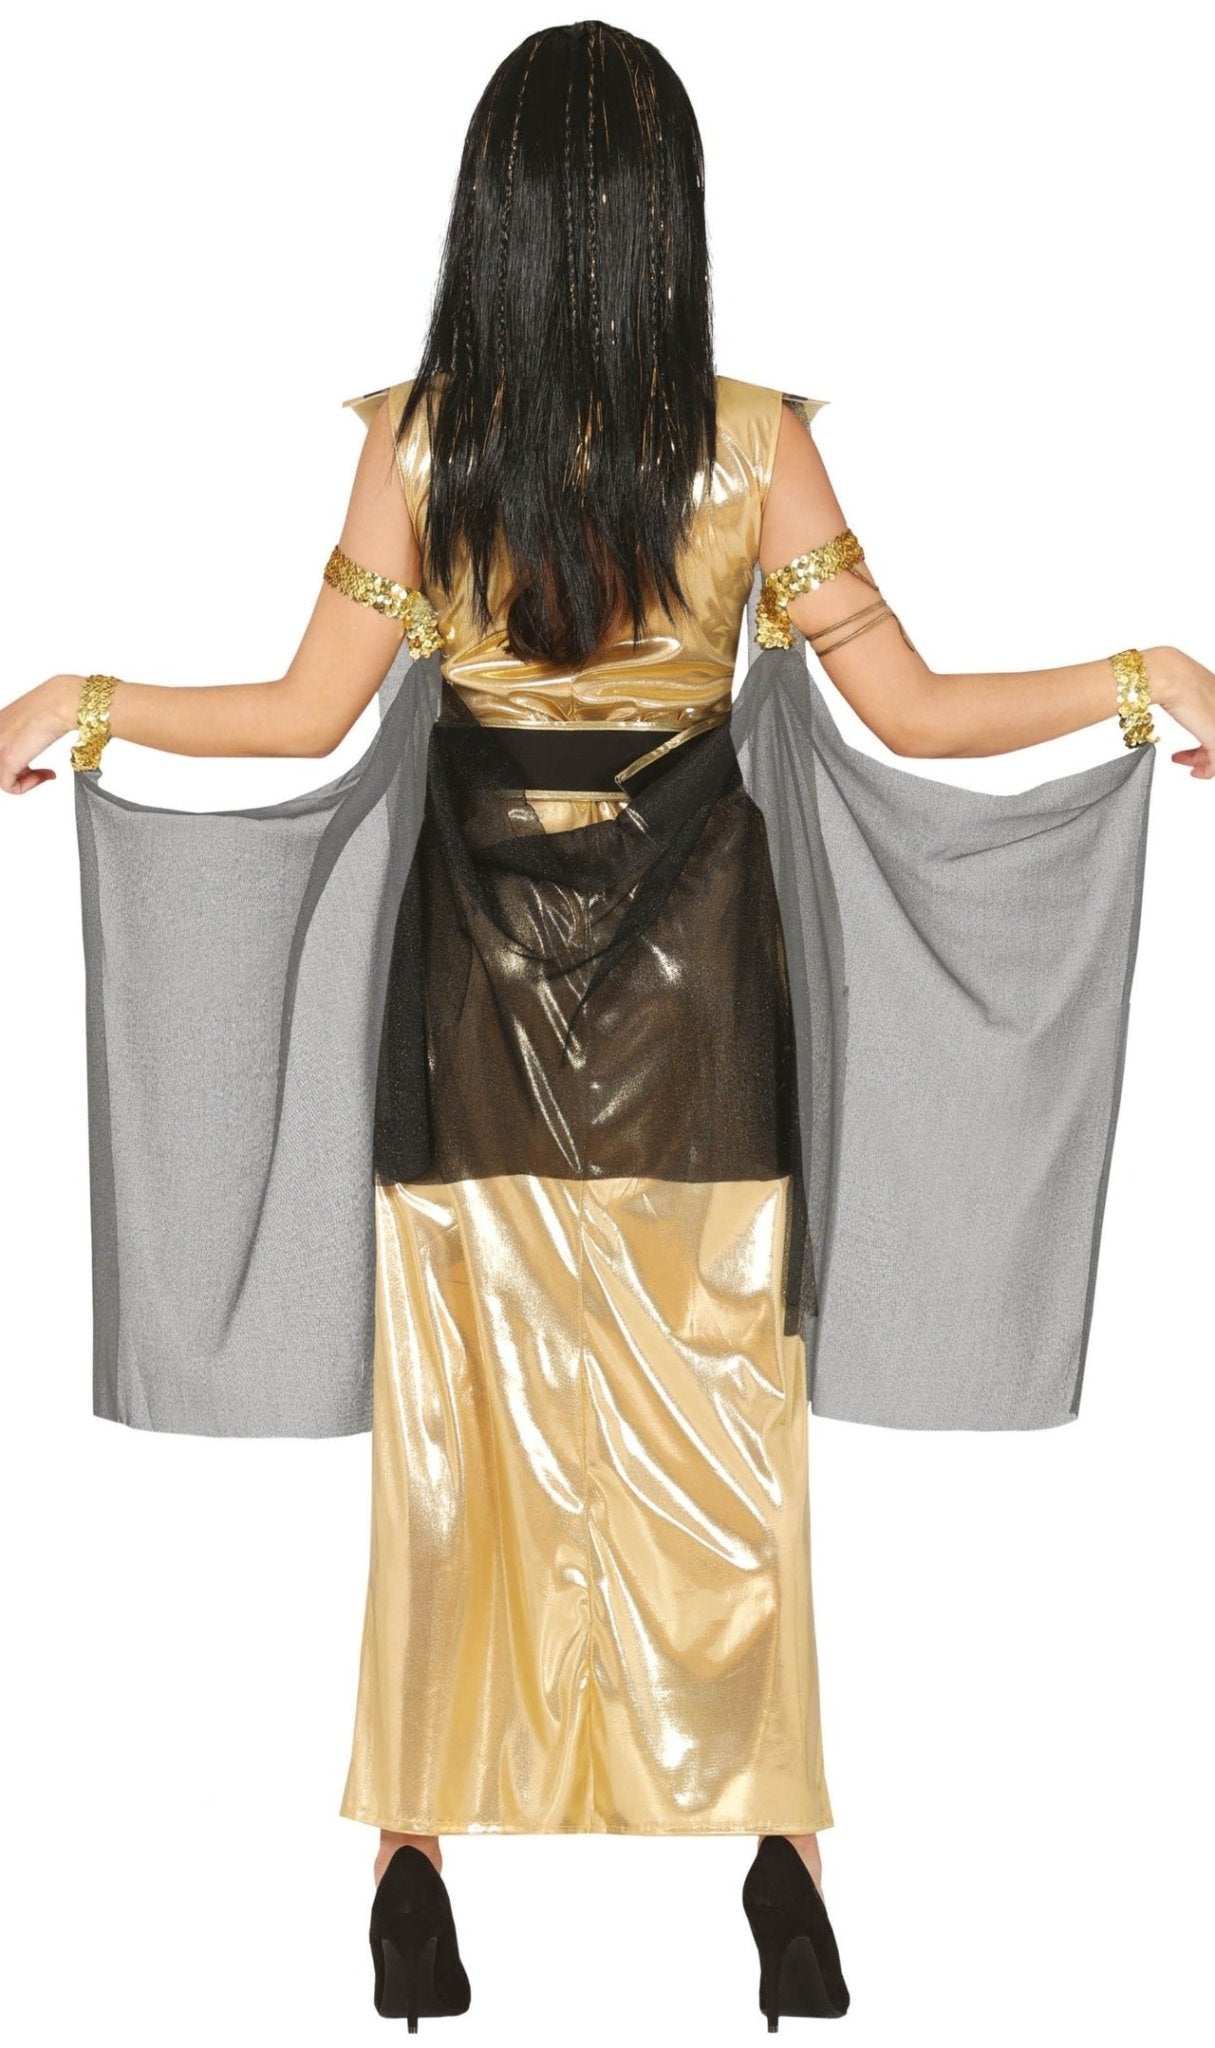 Acquista online il costume da Cleopatra egiziana adulto